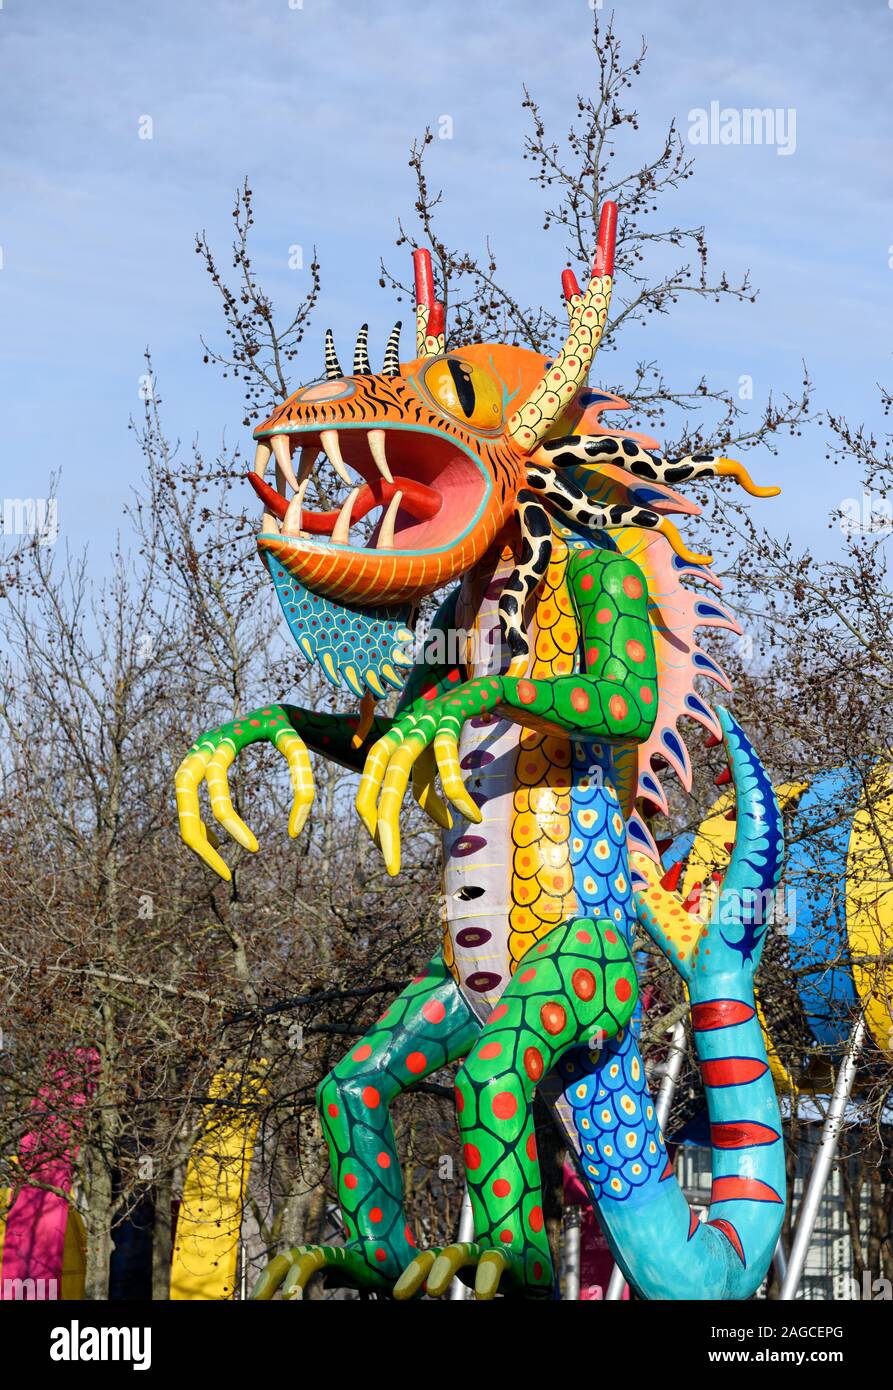 L'art populaire mexicain sculpture de couleur vive créature fantastique appelé "Alebrijes" sont présents dans le Parc de la Villette à Paris, France. Banque D'Images